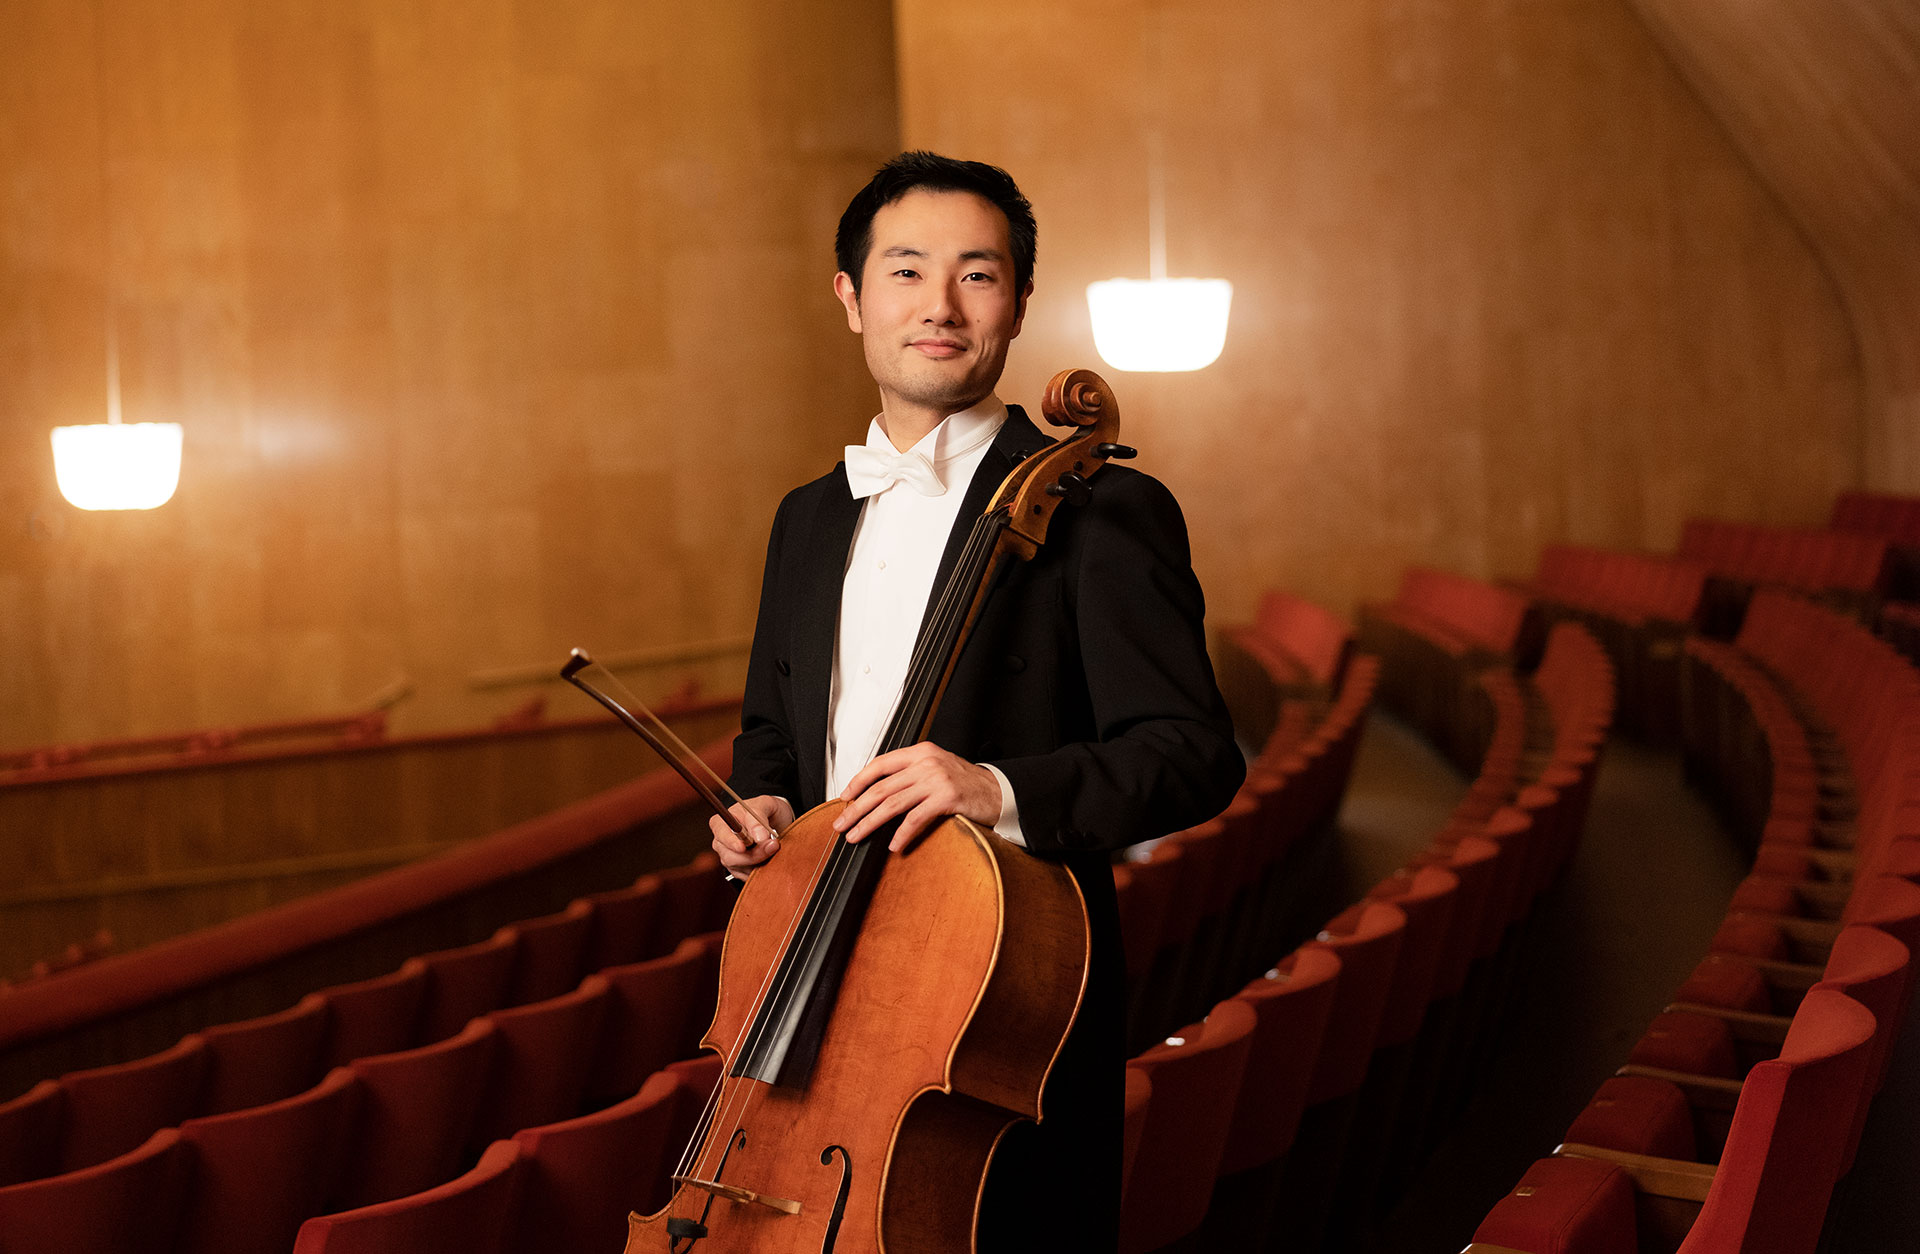 Cellisten Jun Sasaki står lutad mot de röda salongsstolarna med cellon i handen.